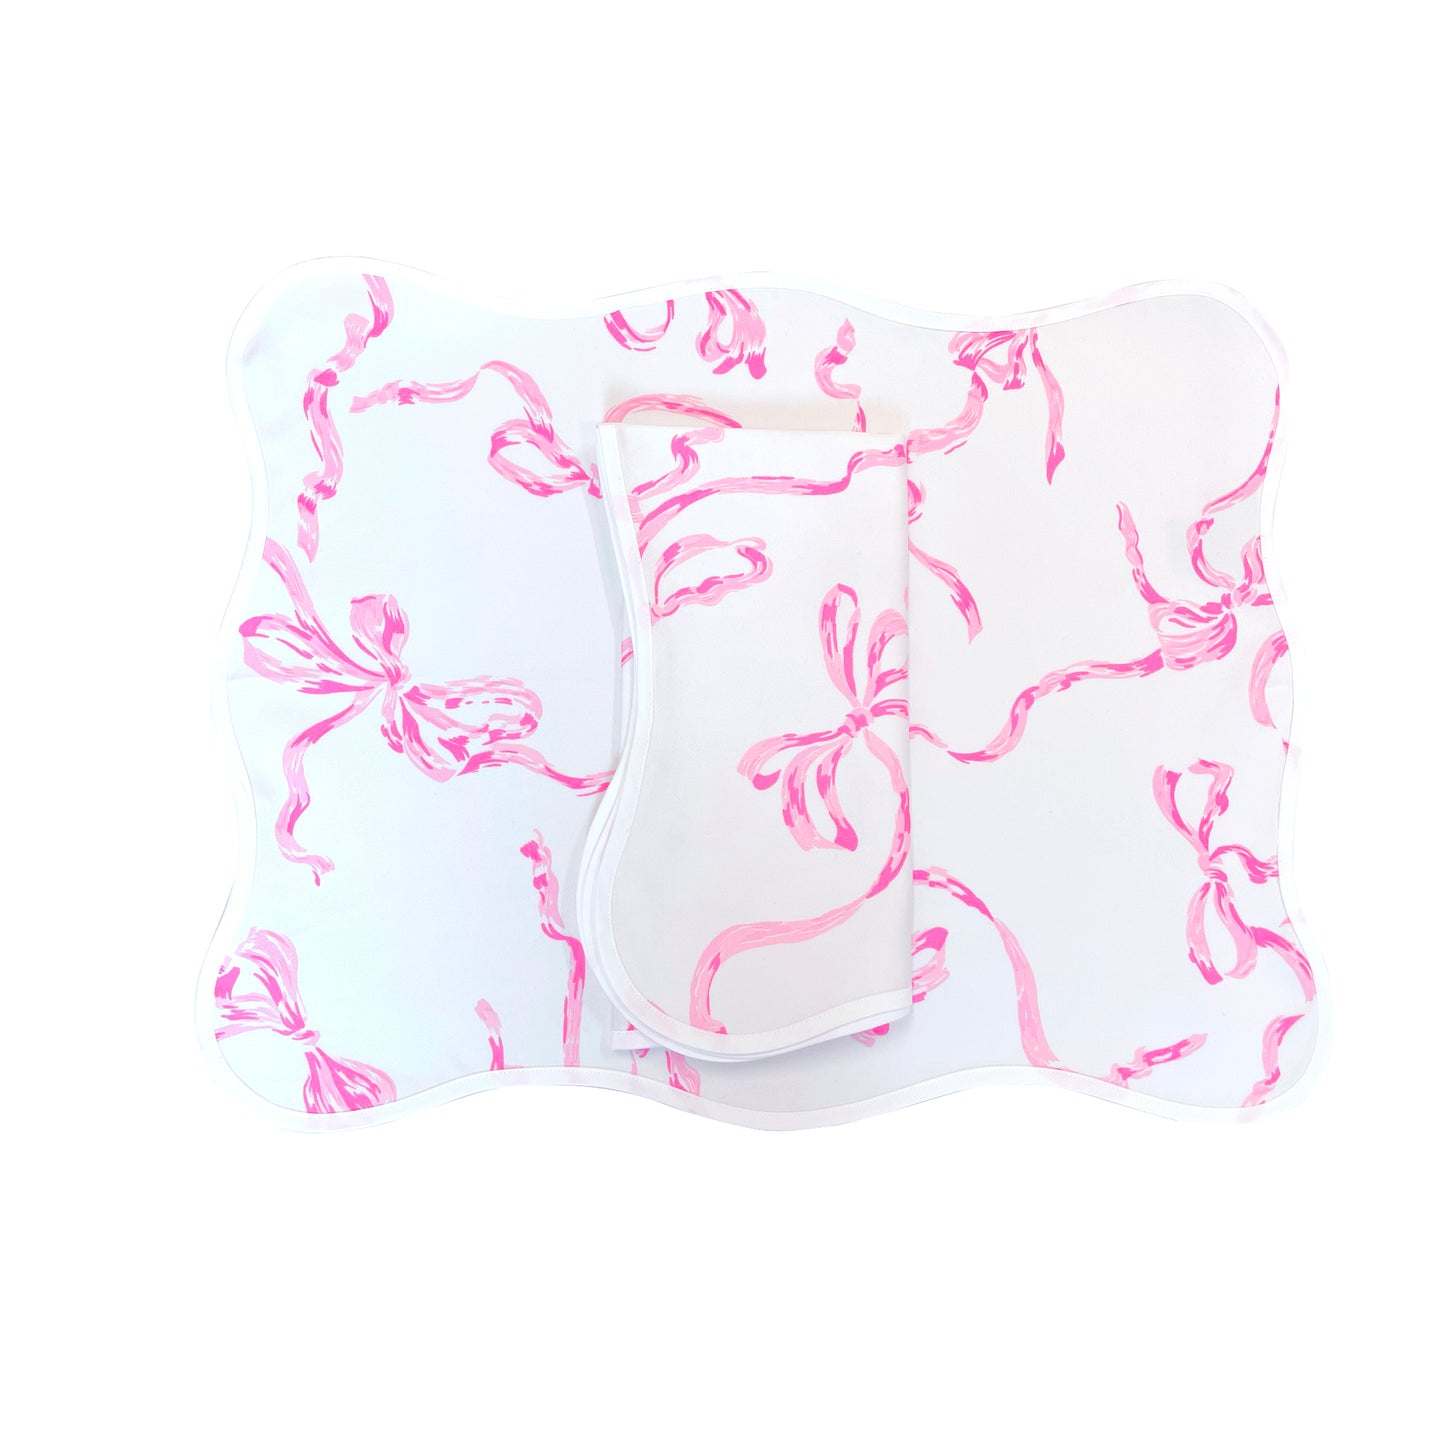 Rubans Pink Printed Placemat/Napkin Set